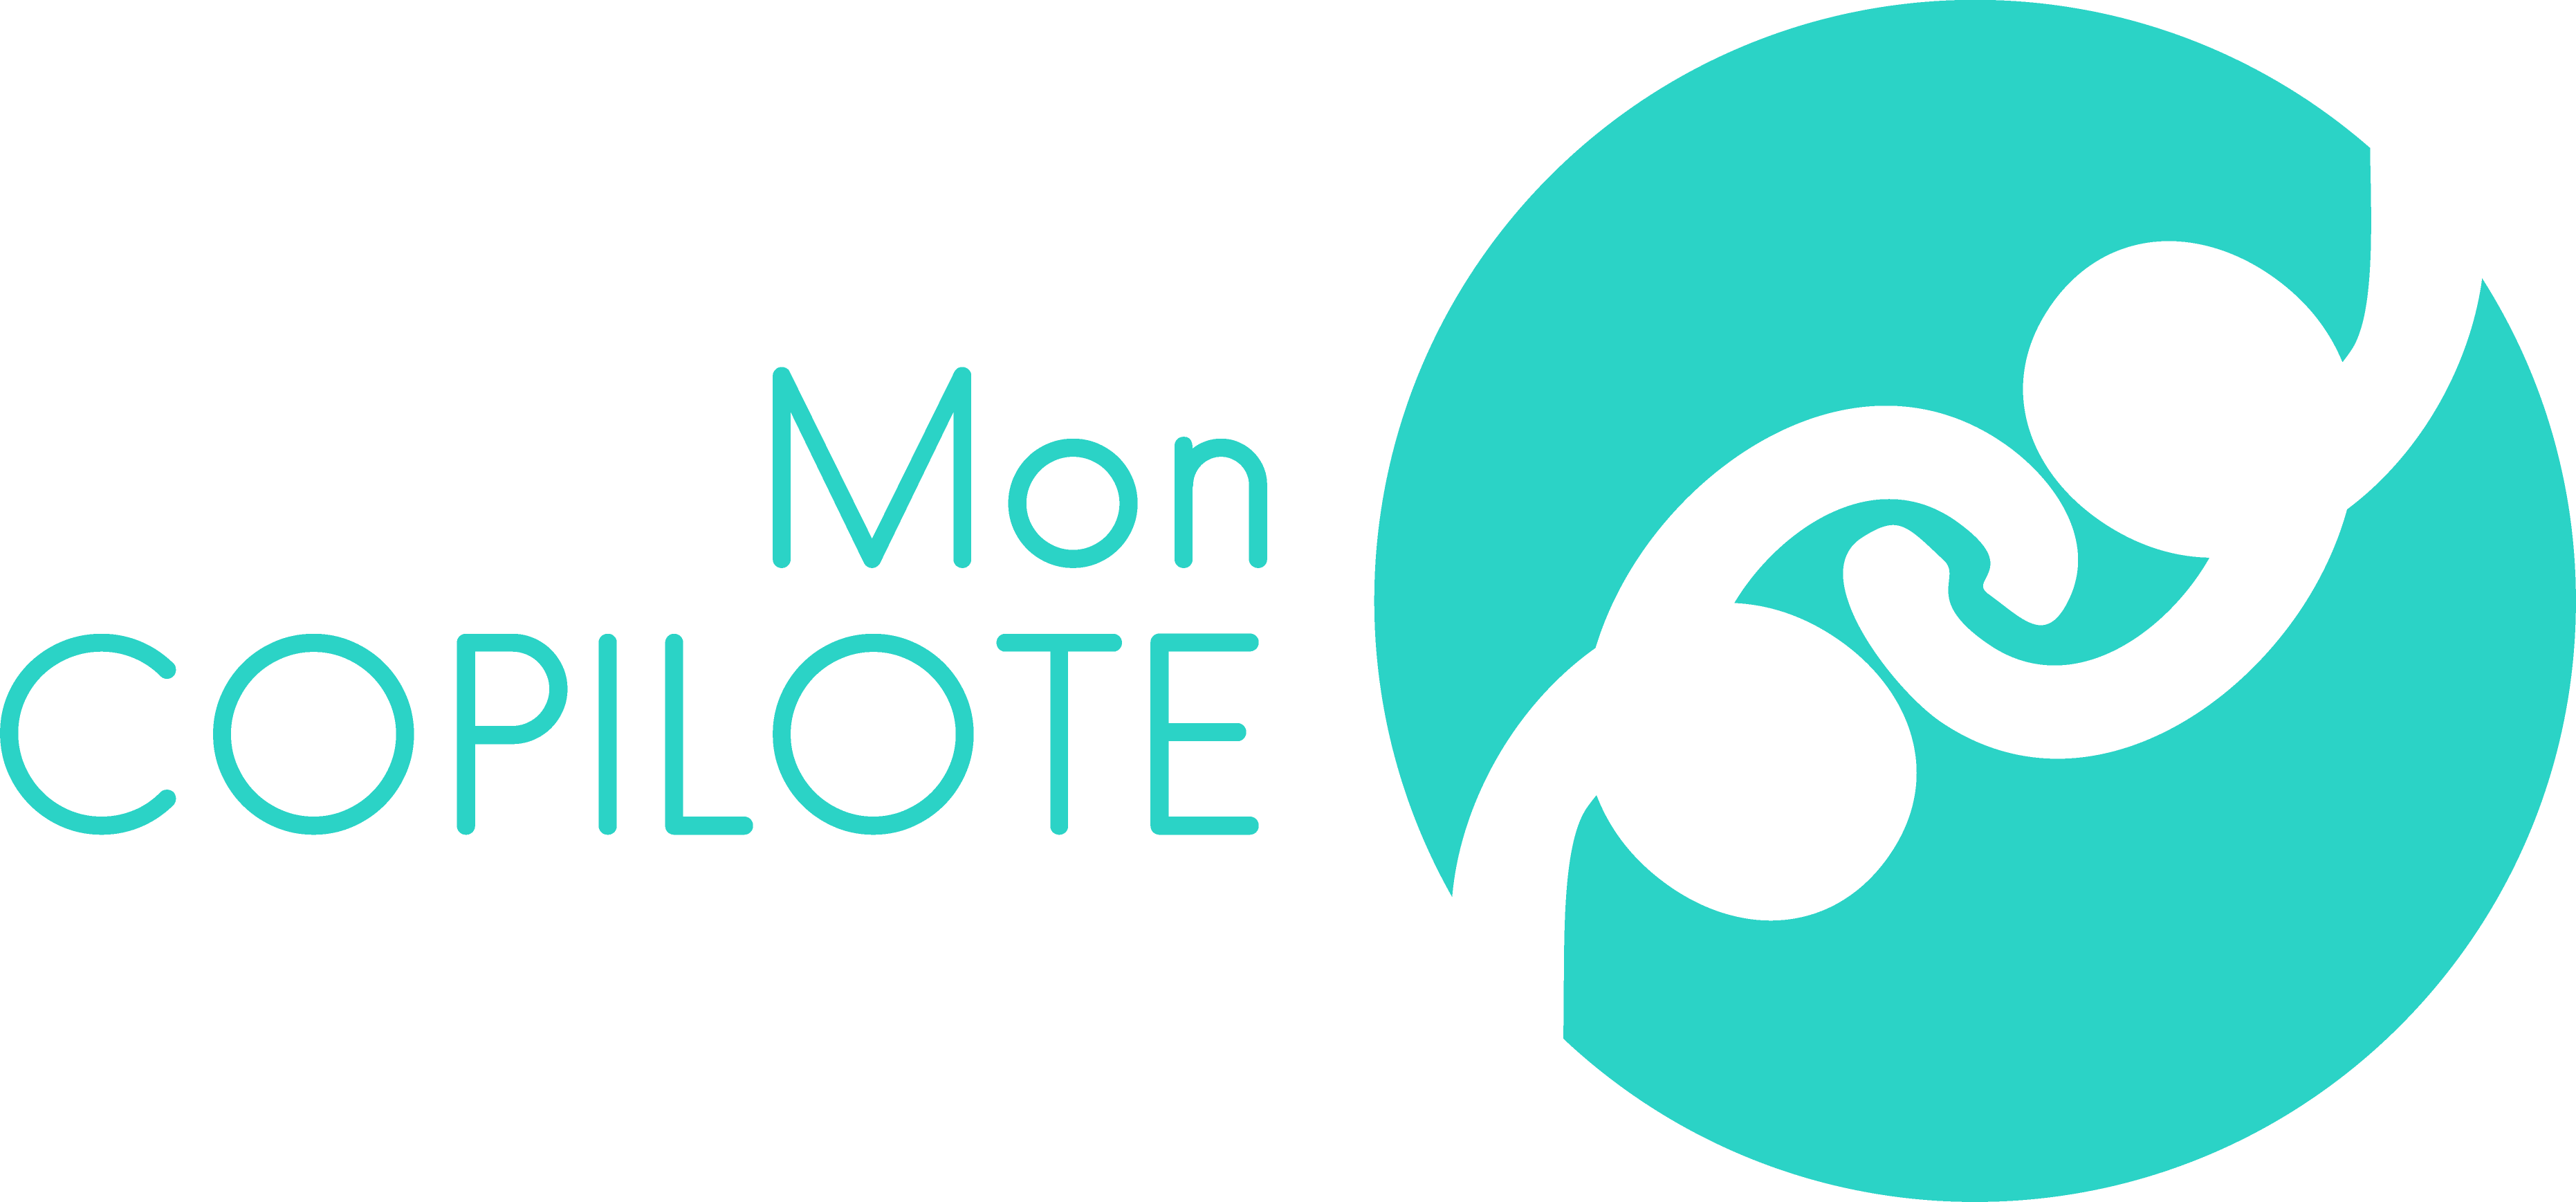 MONCOPILOTE_logo_Fdtransparent_droite_web.png